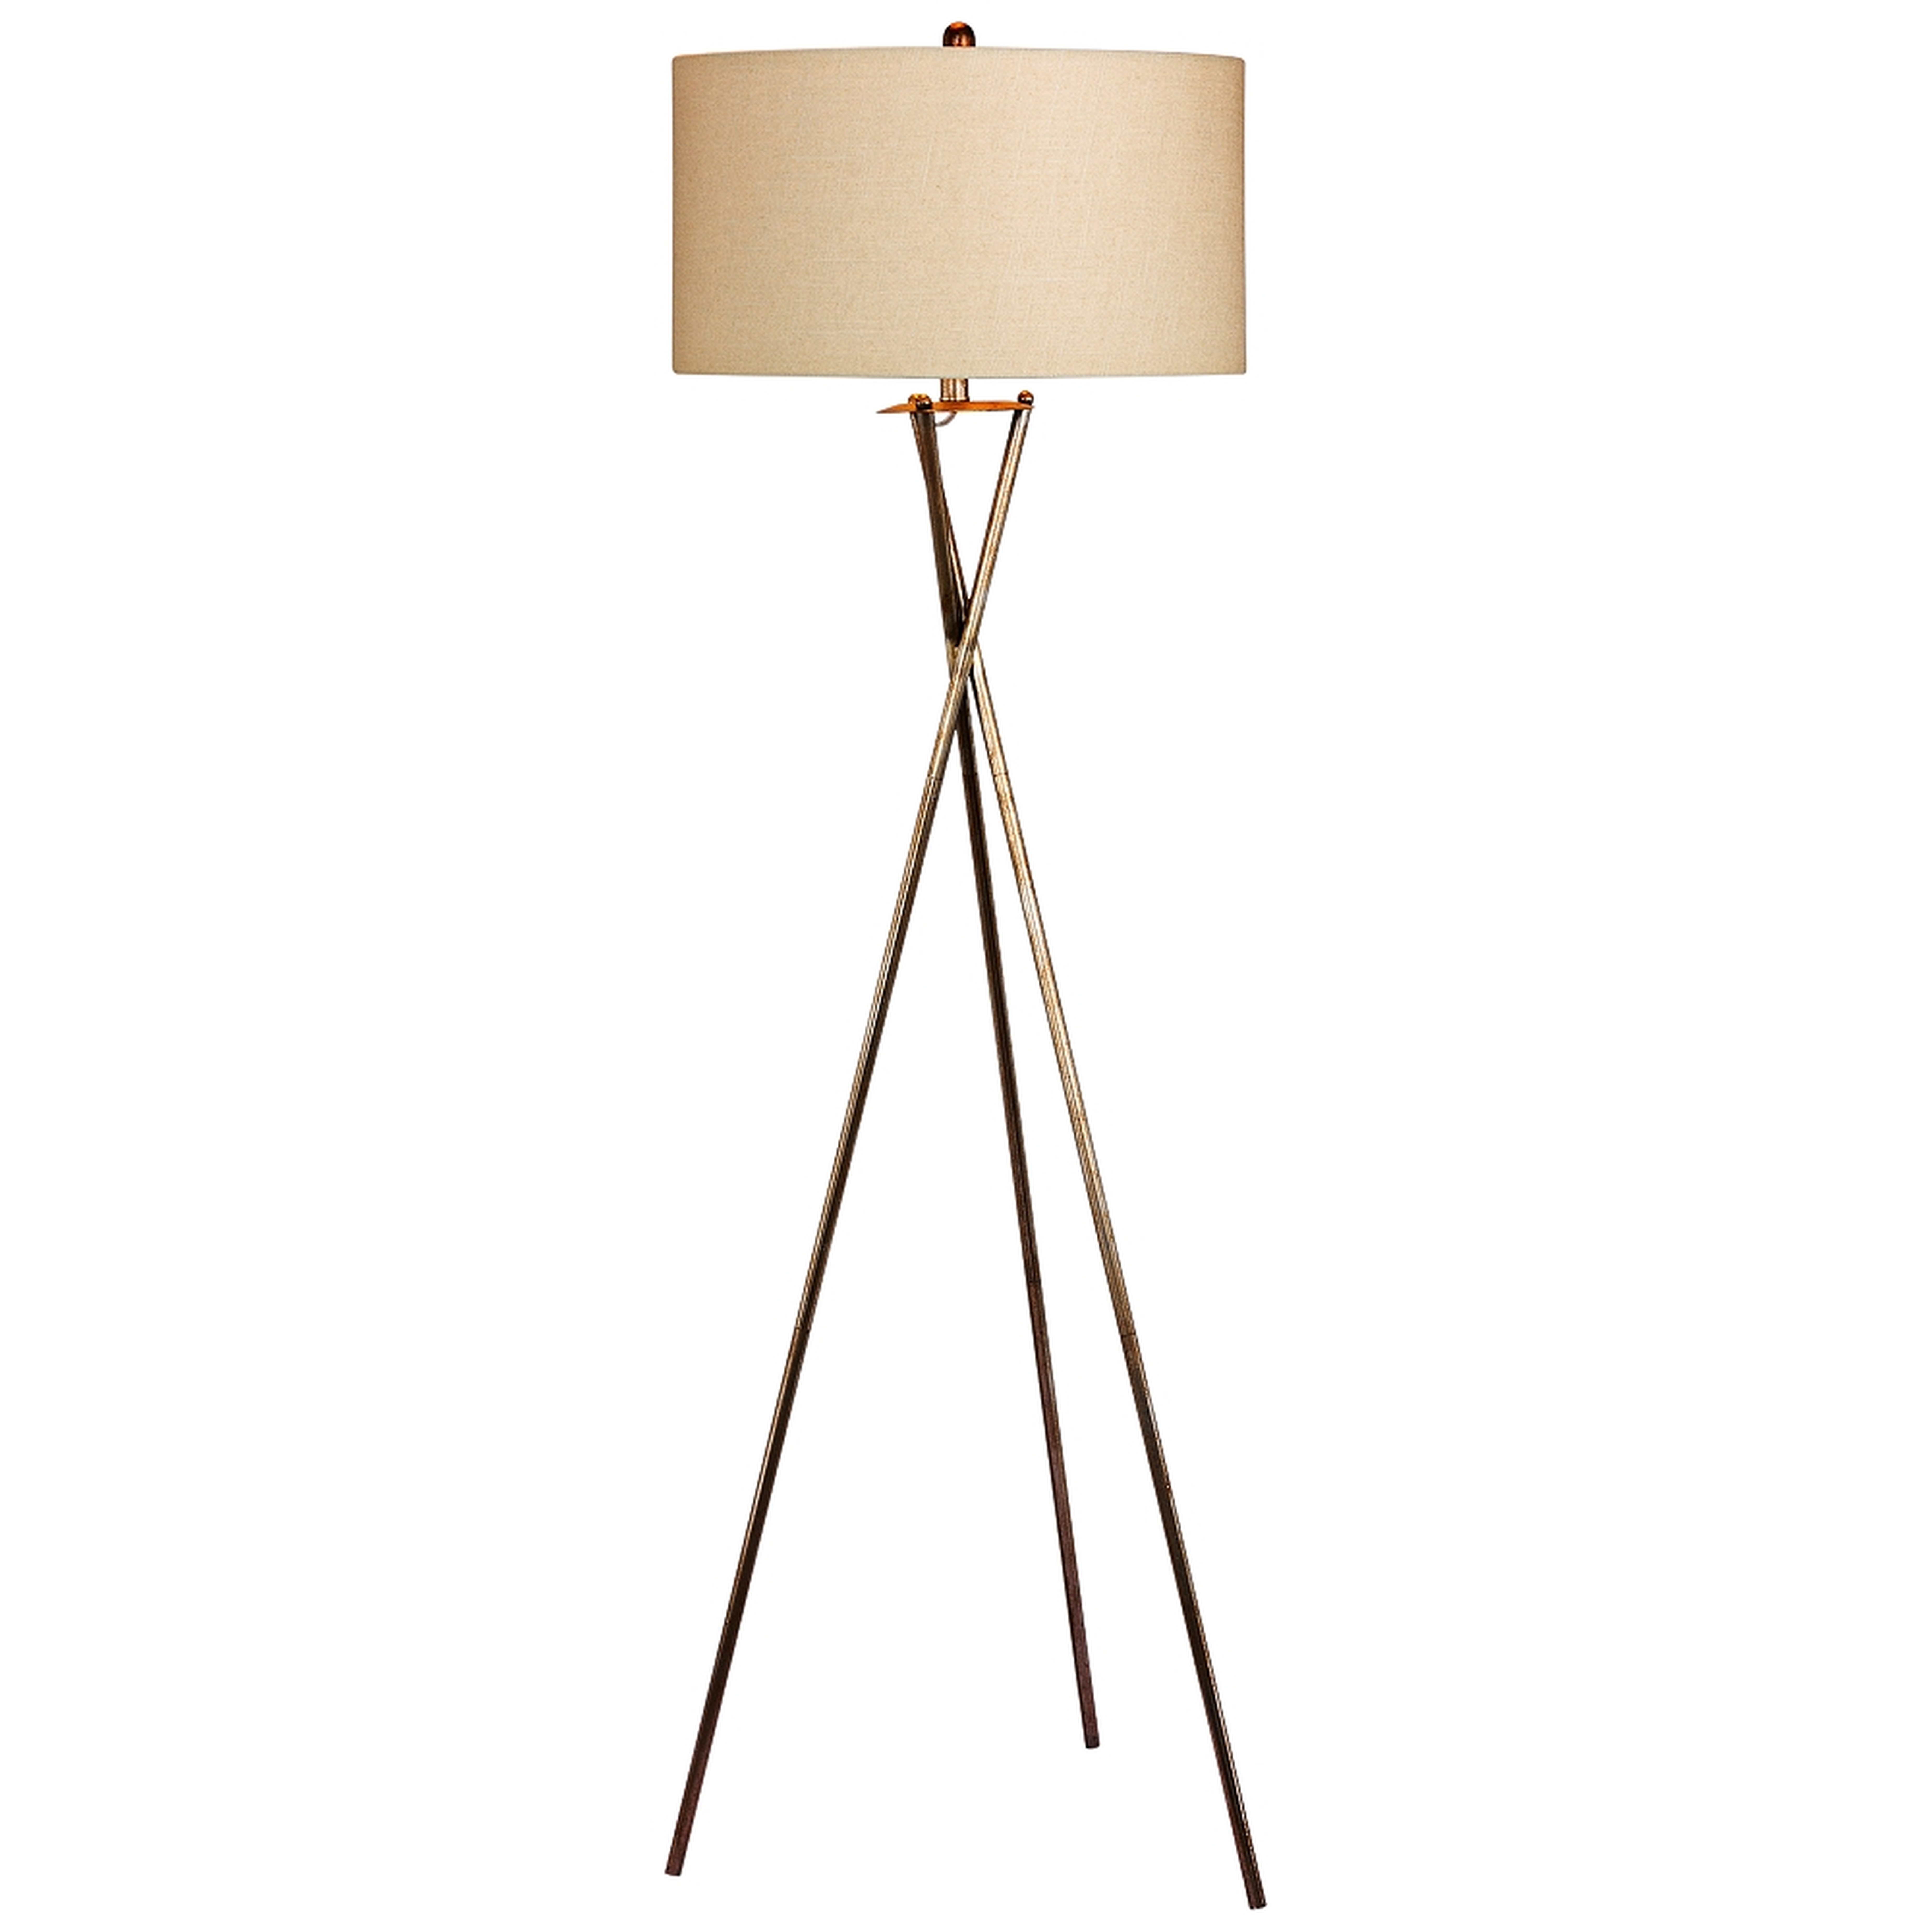 Breslen Rusted Silver Tripod Metal Floor Lamp - Style # 37N90 - Lamps Plus